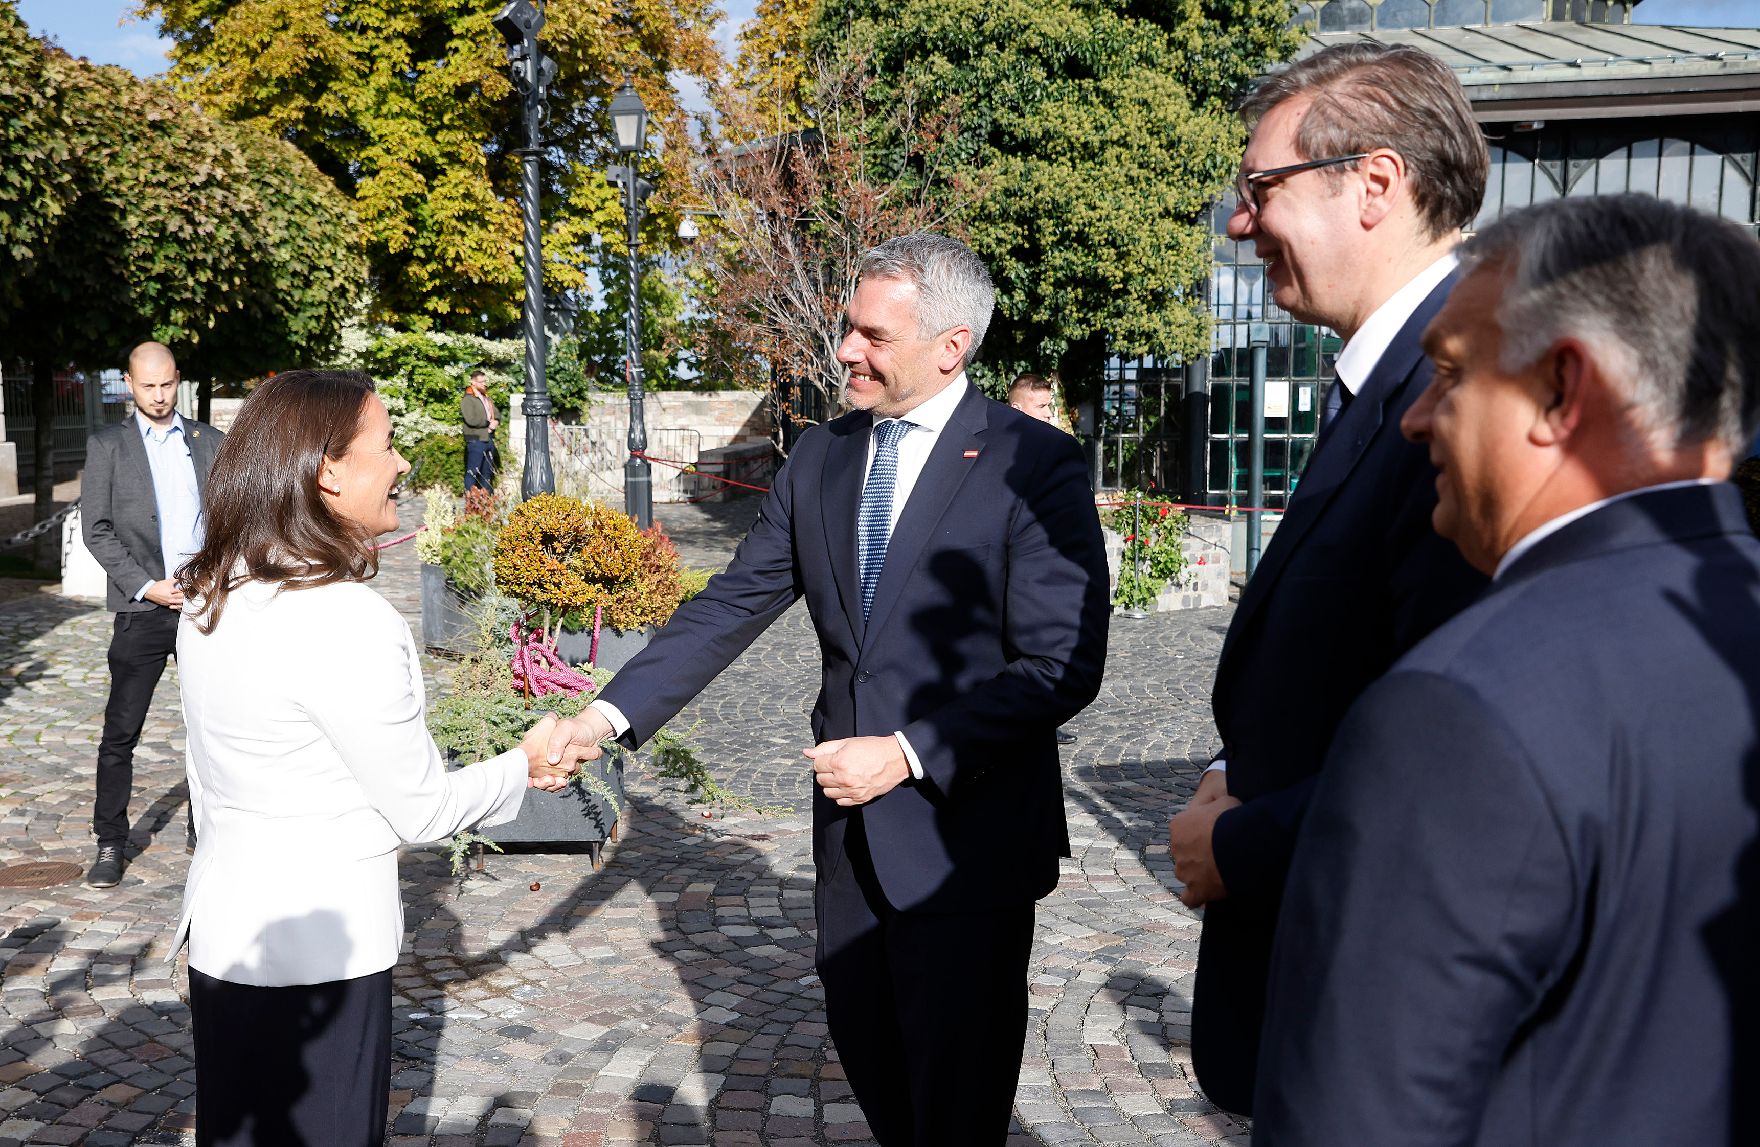 Am 3. Oktober 2022 nahm Bundeskanzler Karl Nehammer (2.v.l.) an der Migrationskonferenz in Budapest teil. Im Bild mit dem ungarischen Premierminister Viktor Orban (r.) und dem serbischen Präsidenten Aleksandar Vucic (3.v.l.)und der ungarischen Präsidentin Katalin Novak (l.)